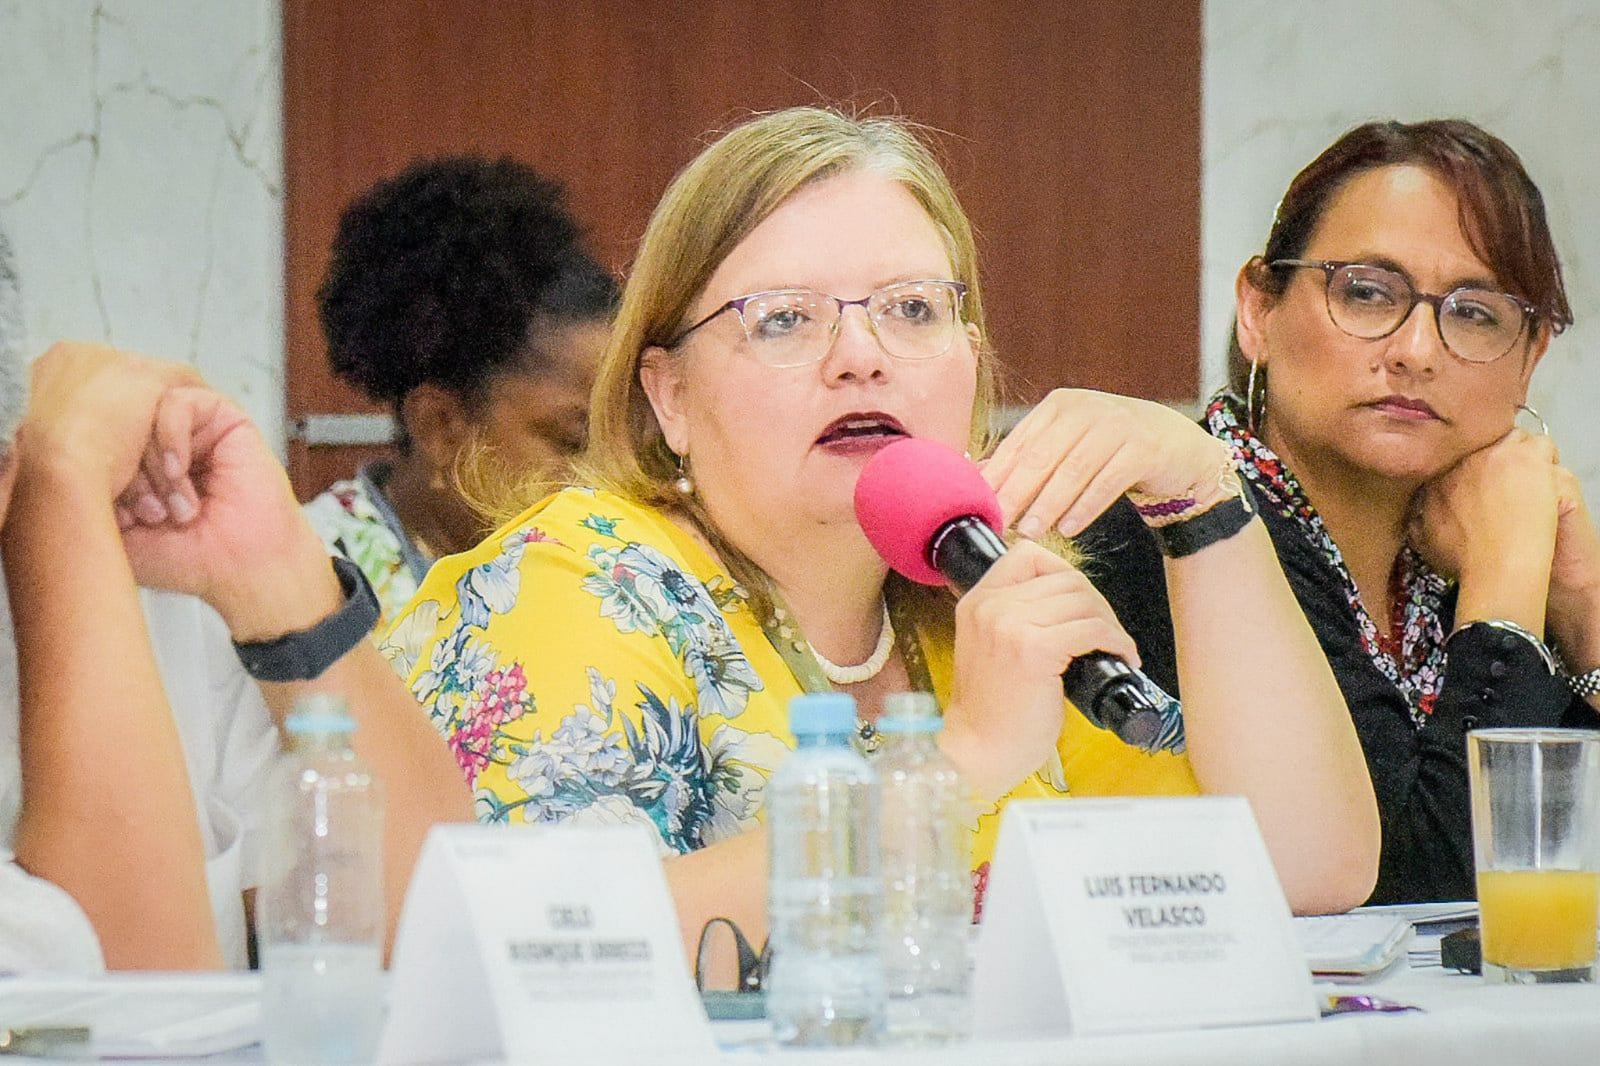 “Chocó es uno de los departamentos en alerta roja, debemos actuar ya”: el clamor de la directora general del ICBF, Astrid Cáceres